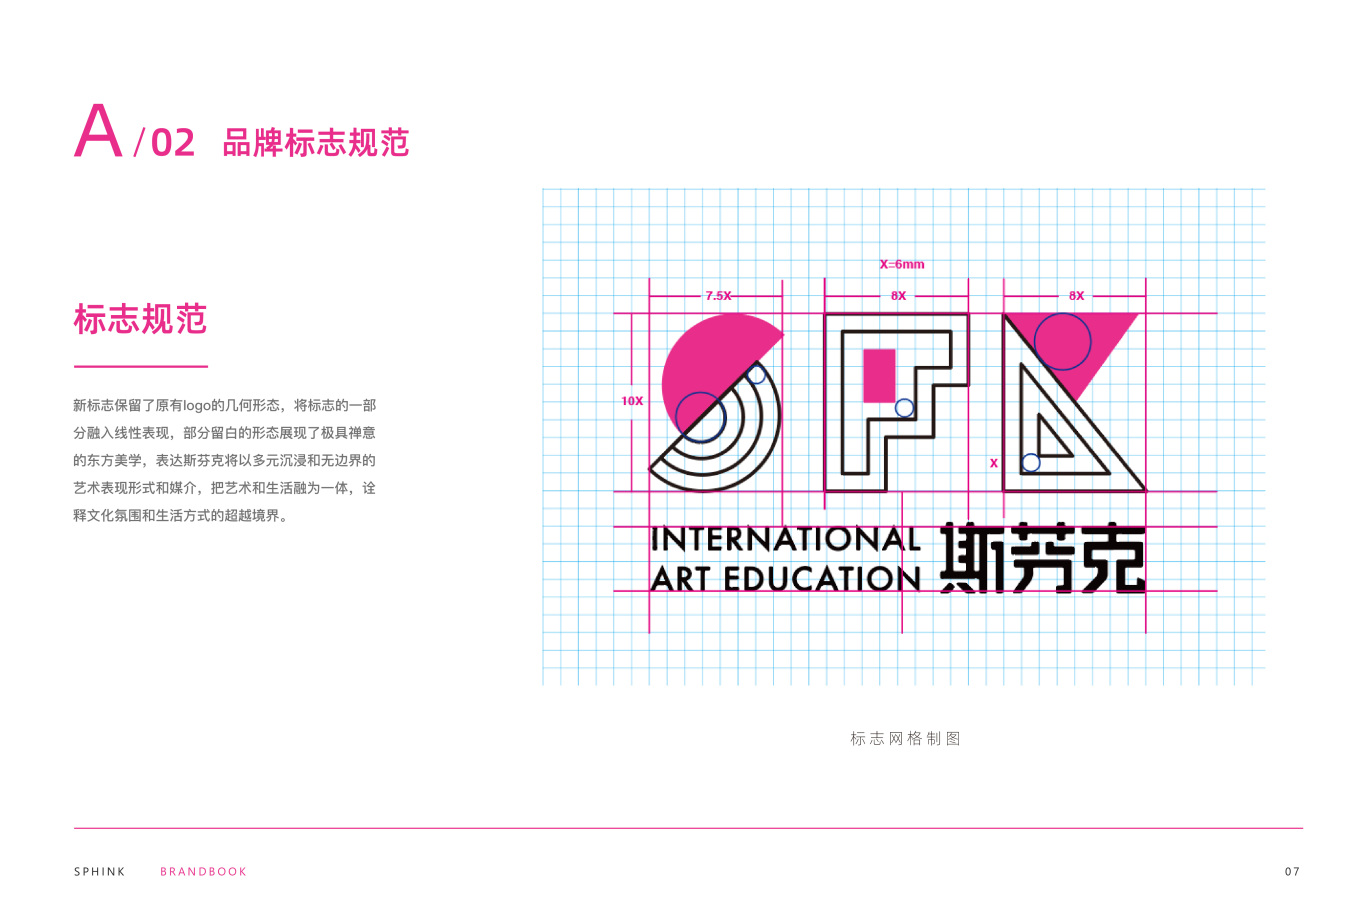 斯芬克国际艺术教育品牌形象升级图7